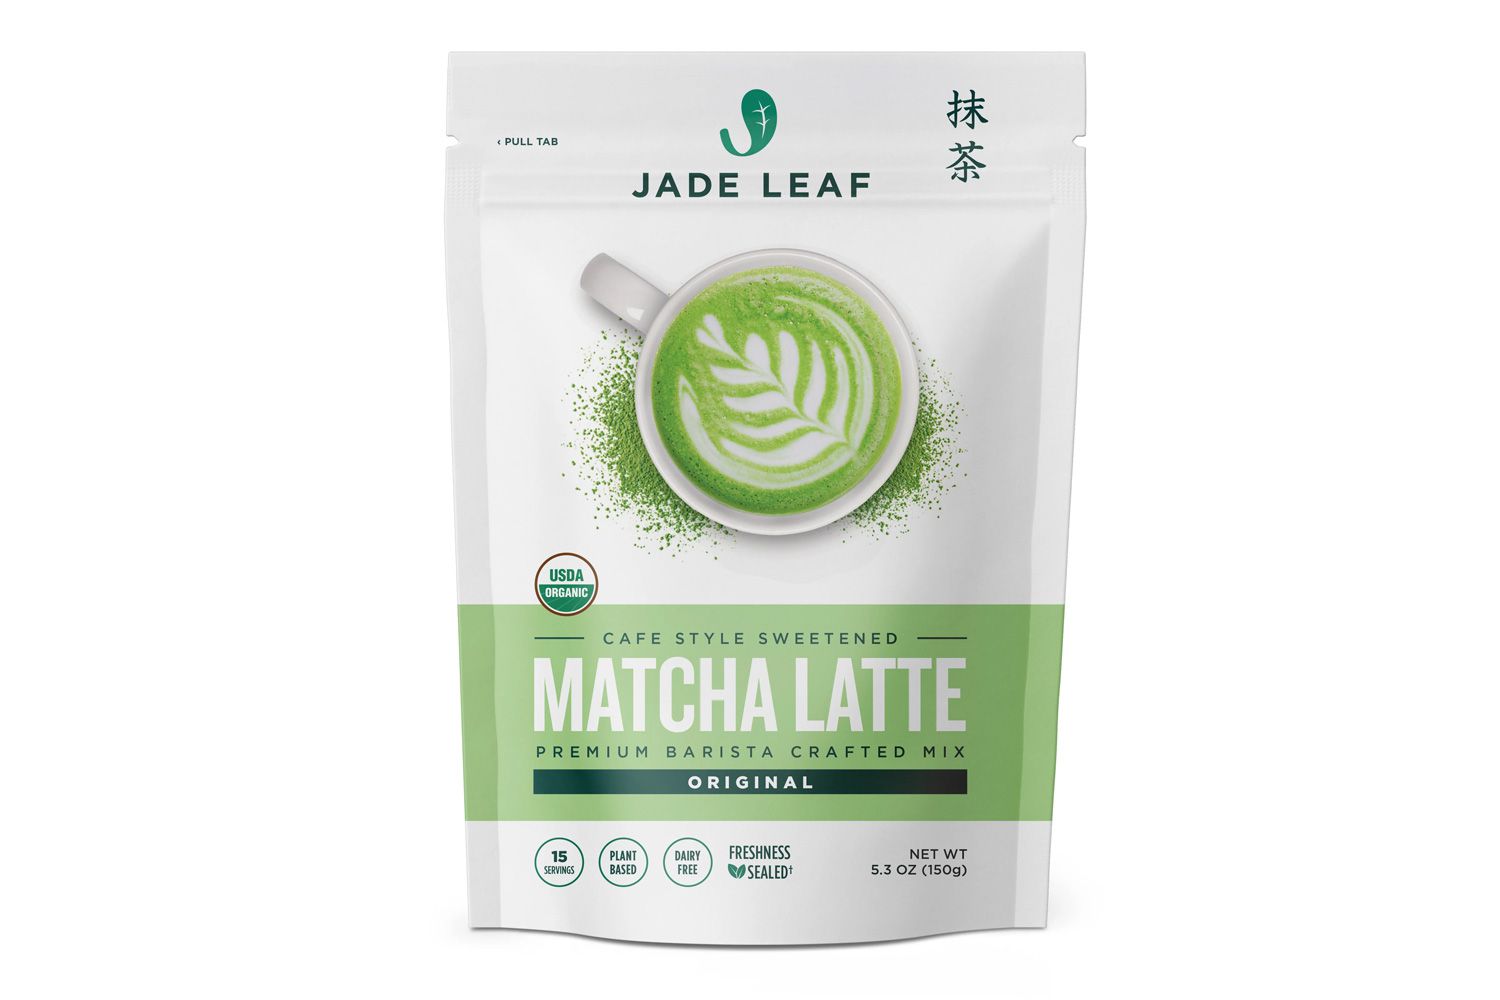 Jade Leaf Matcha Cafe Style Matcha Latte Mix